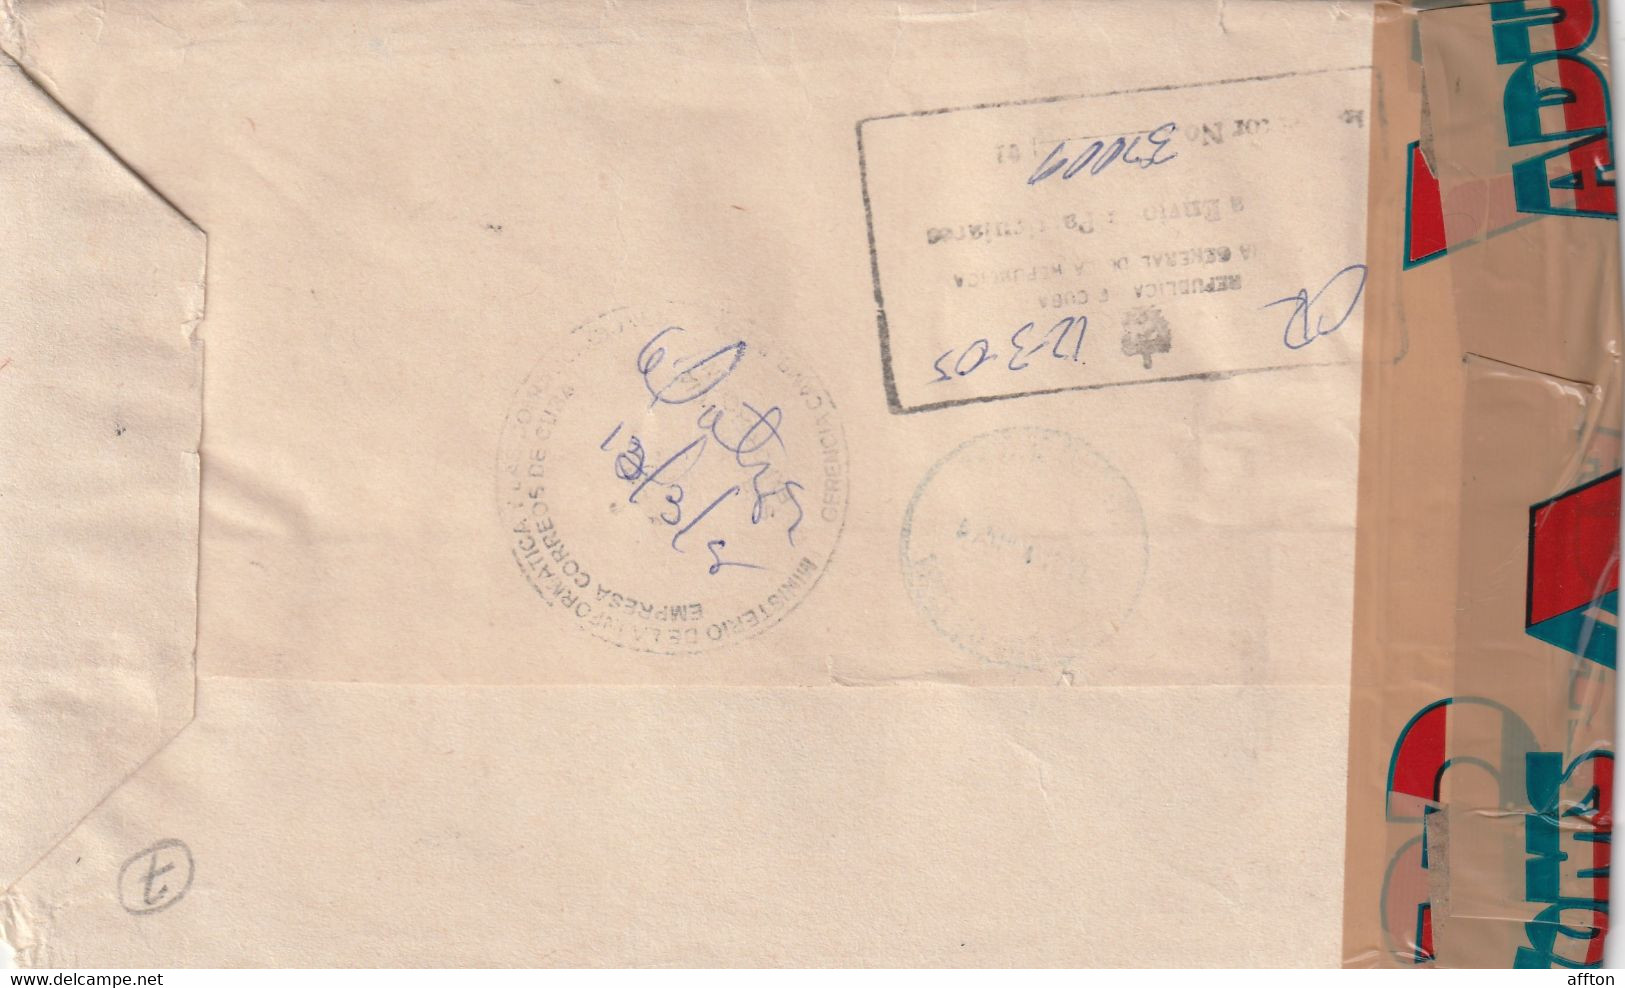 Cuba Cover Mailed - Cartas & Documentos